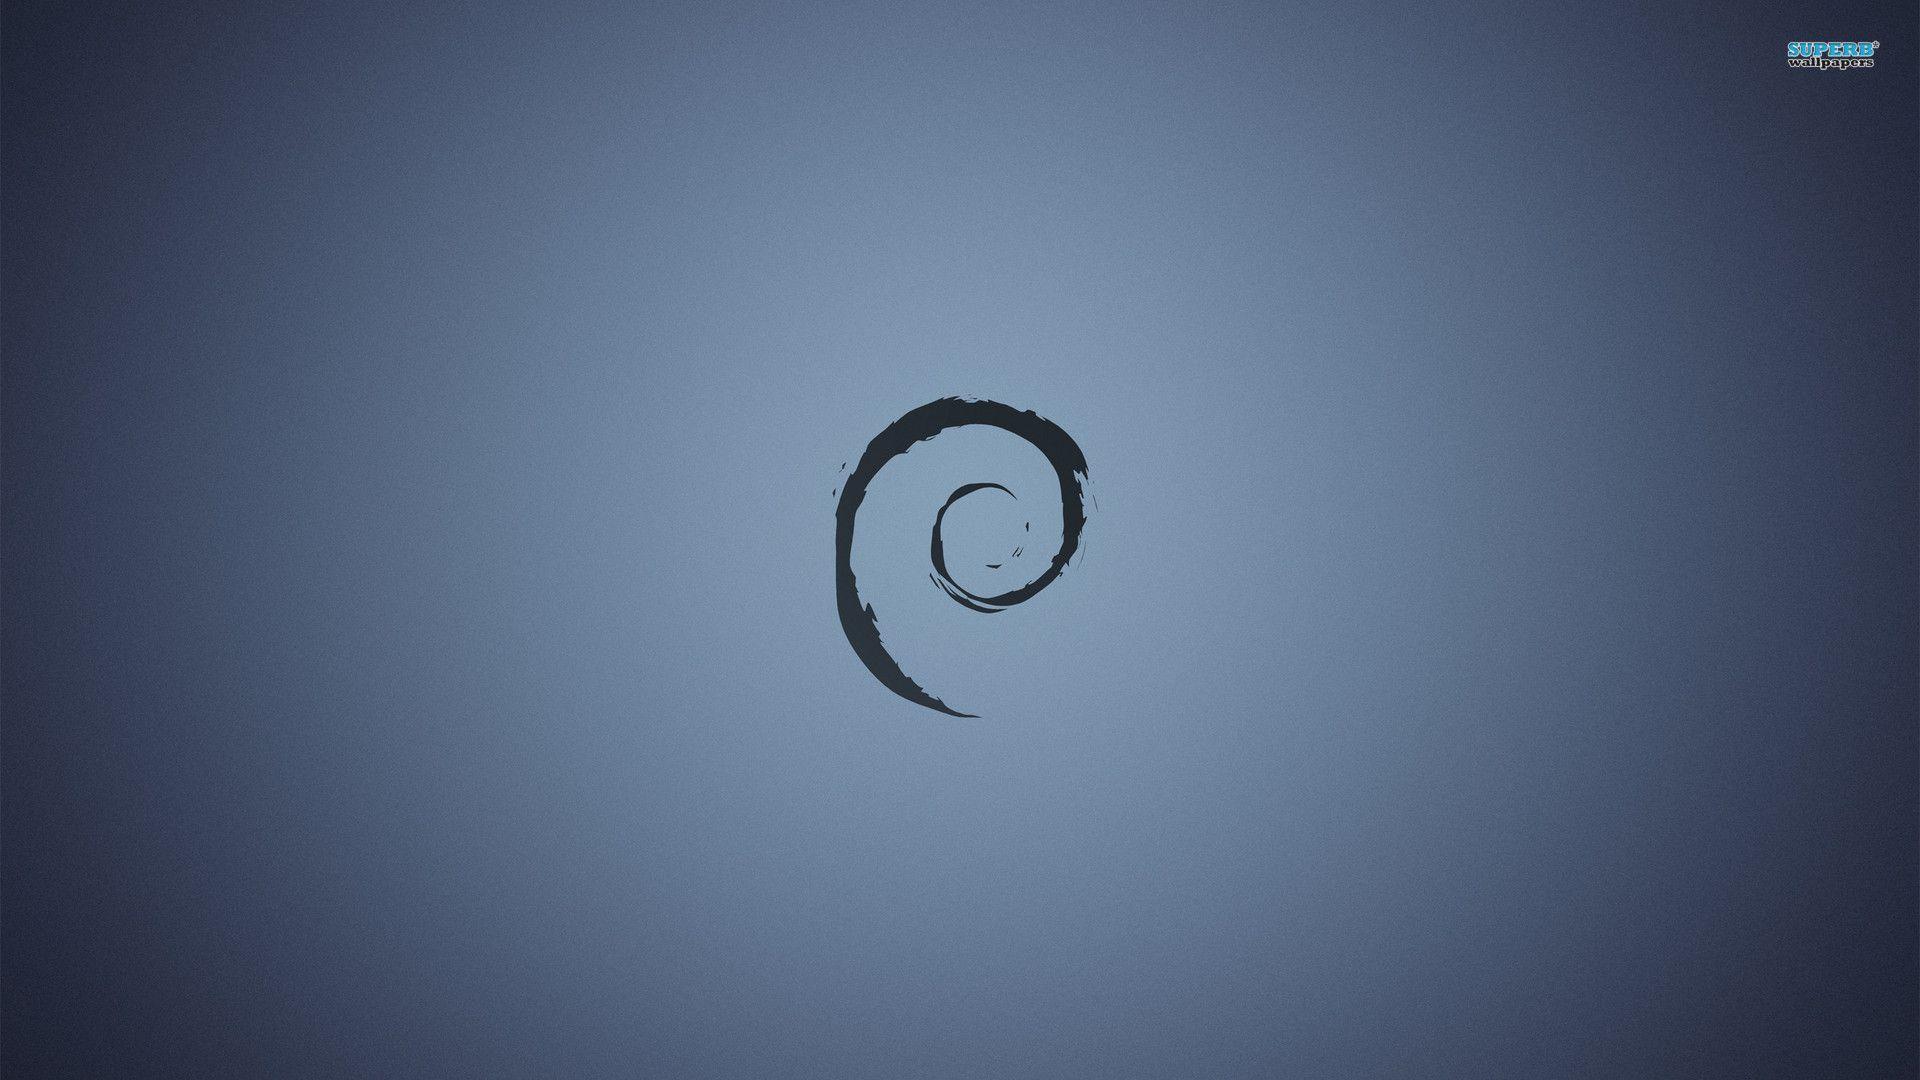 Debian Wallpaper. Debian Background. Debian Wallpaper Widescreen